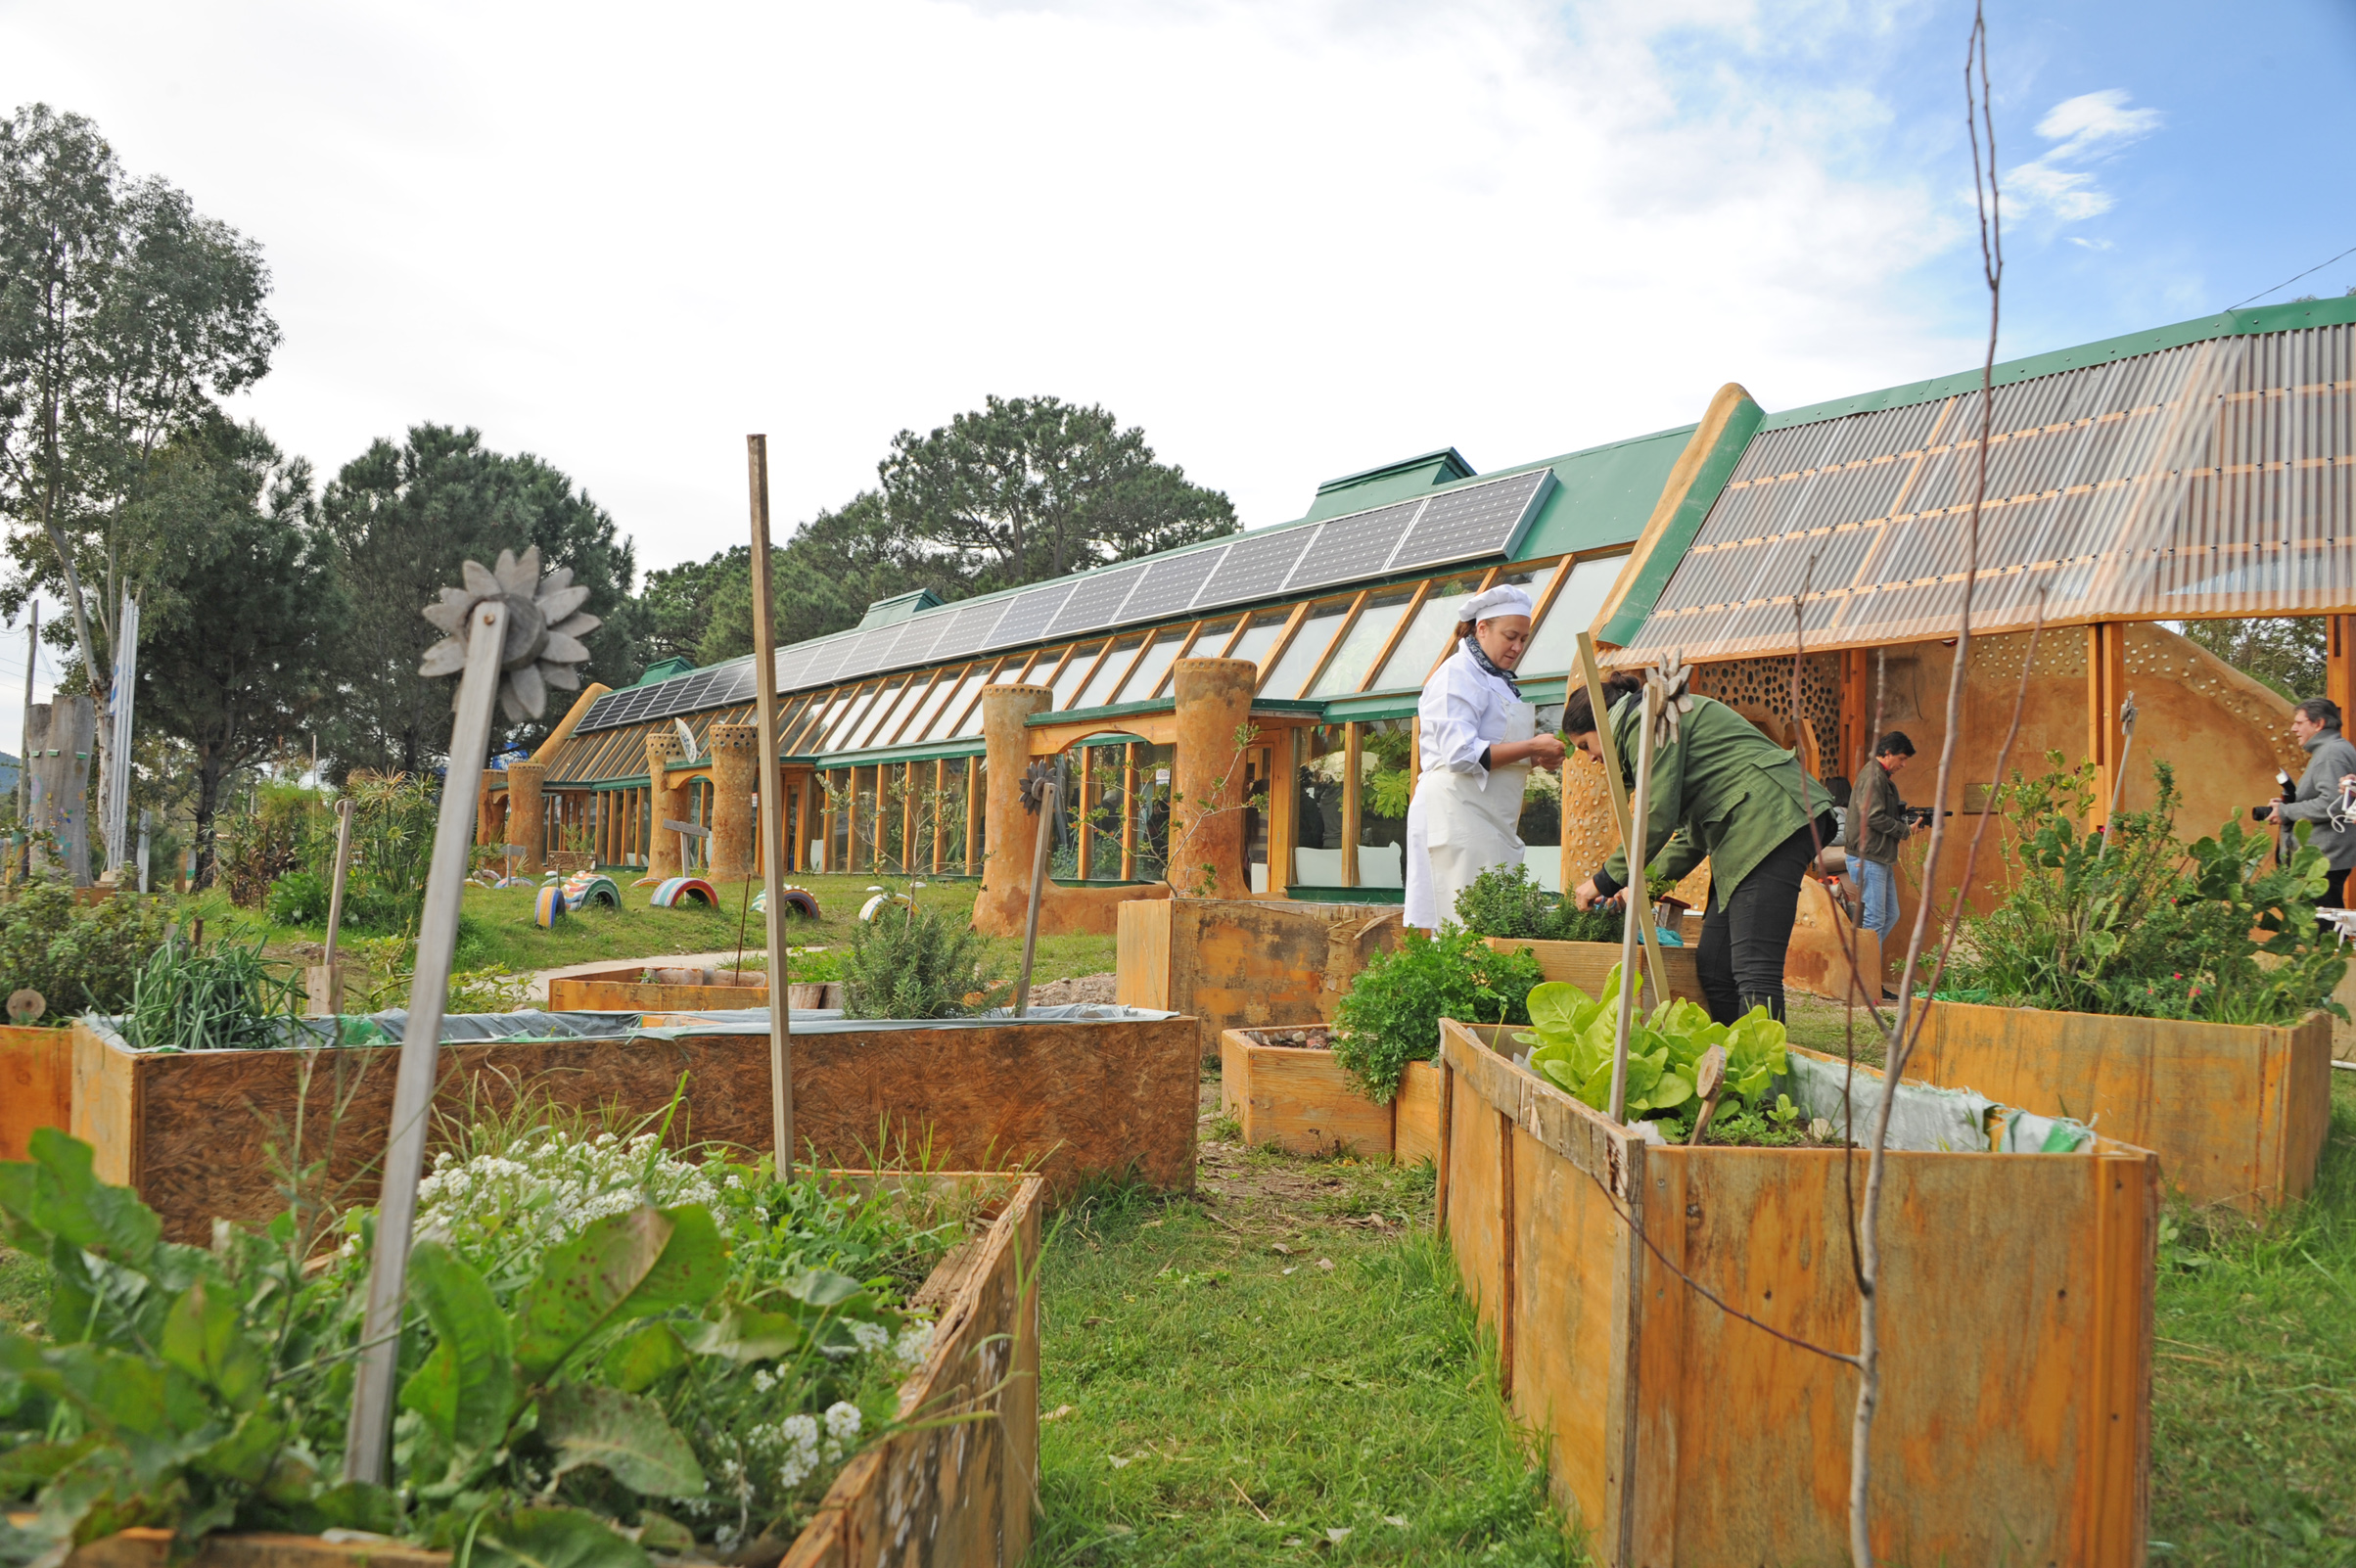 Jardín de la Escuela con cultivos en macetas de madera.